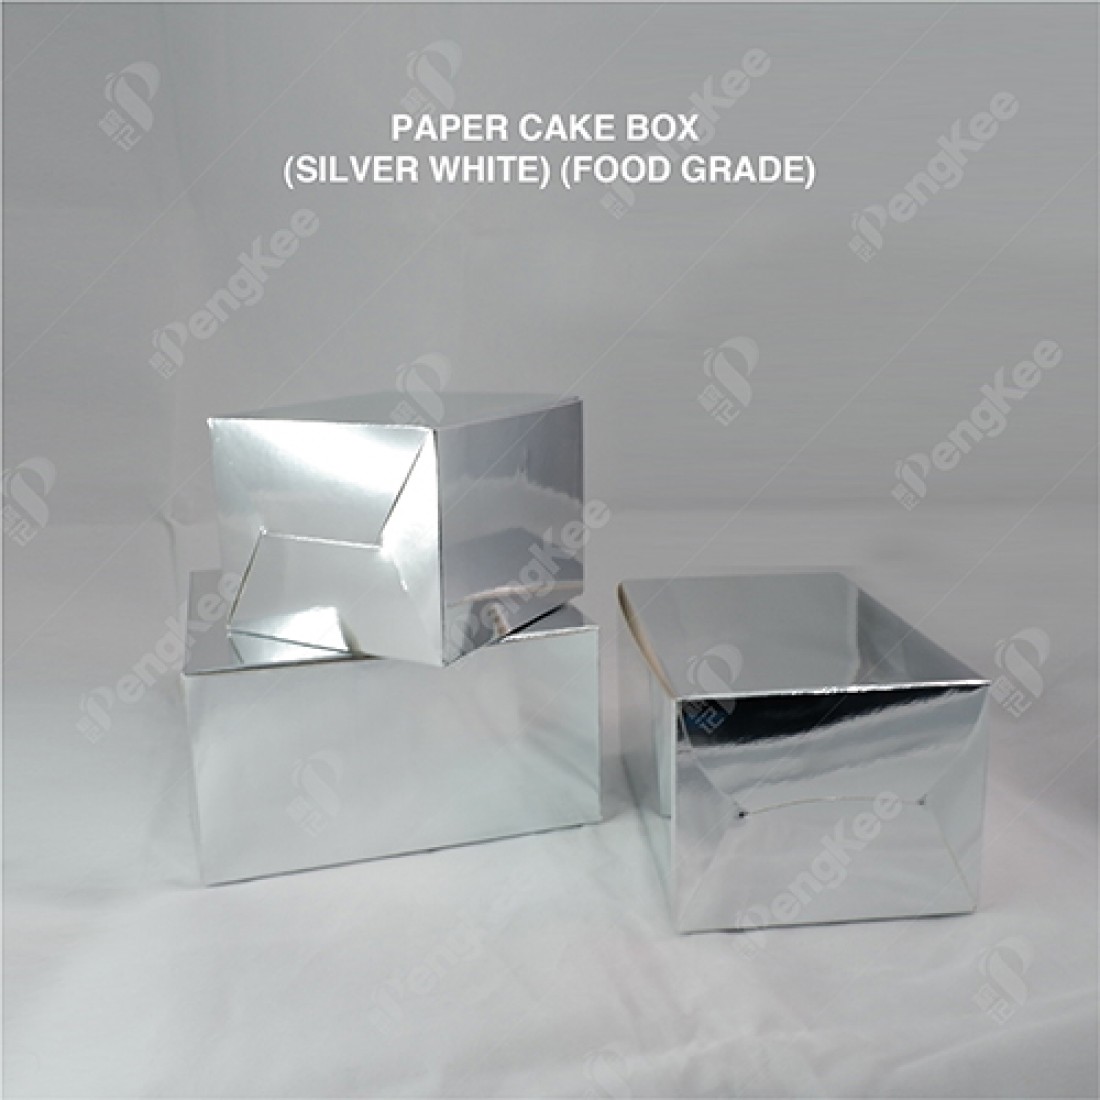 PAPER CAKE BOX (SILVER WHITE) (FOOD GRADE) 